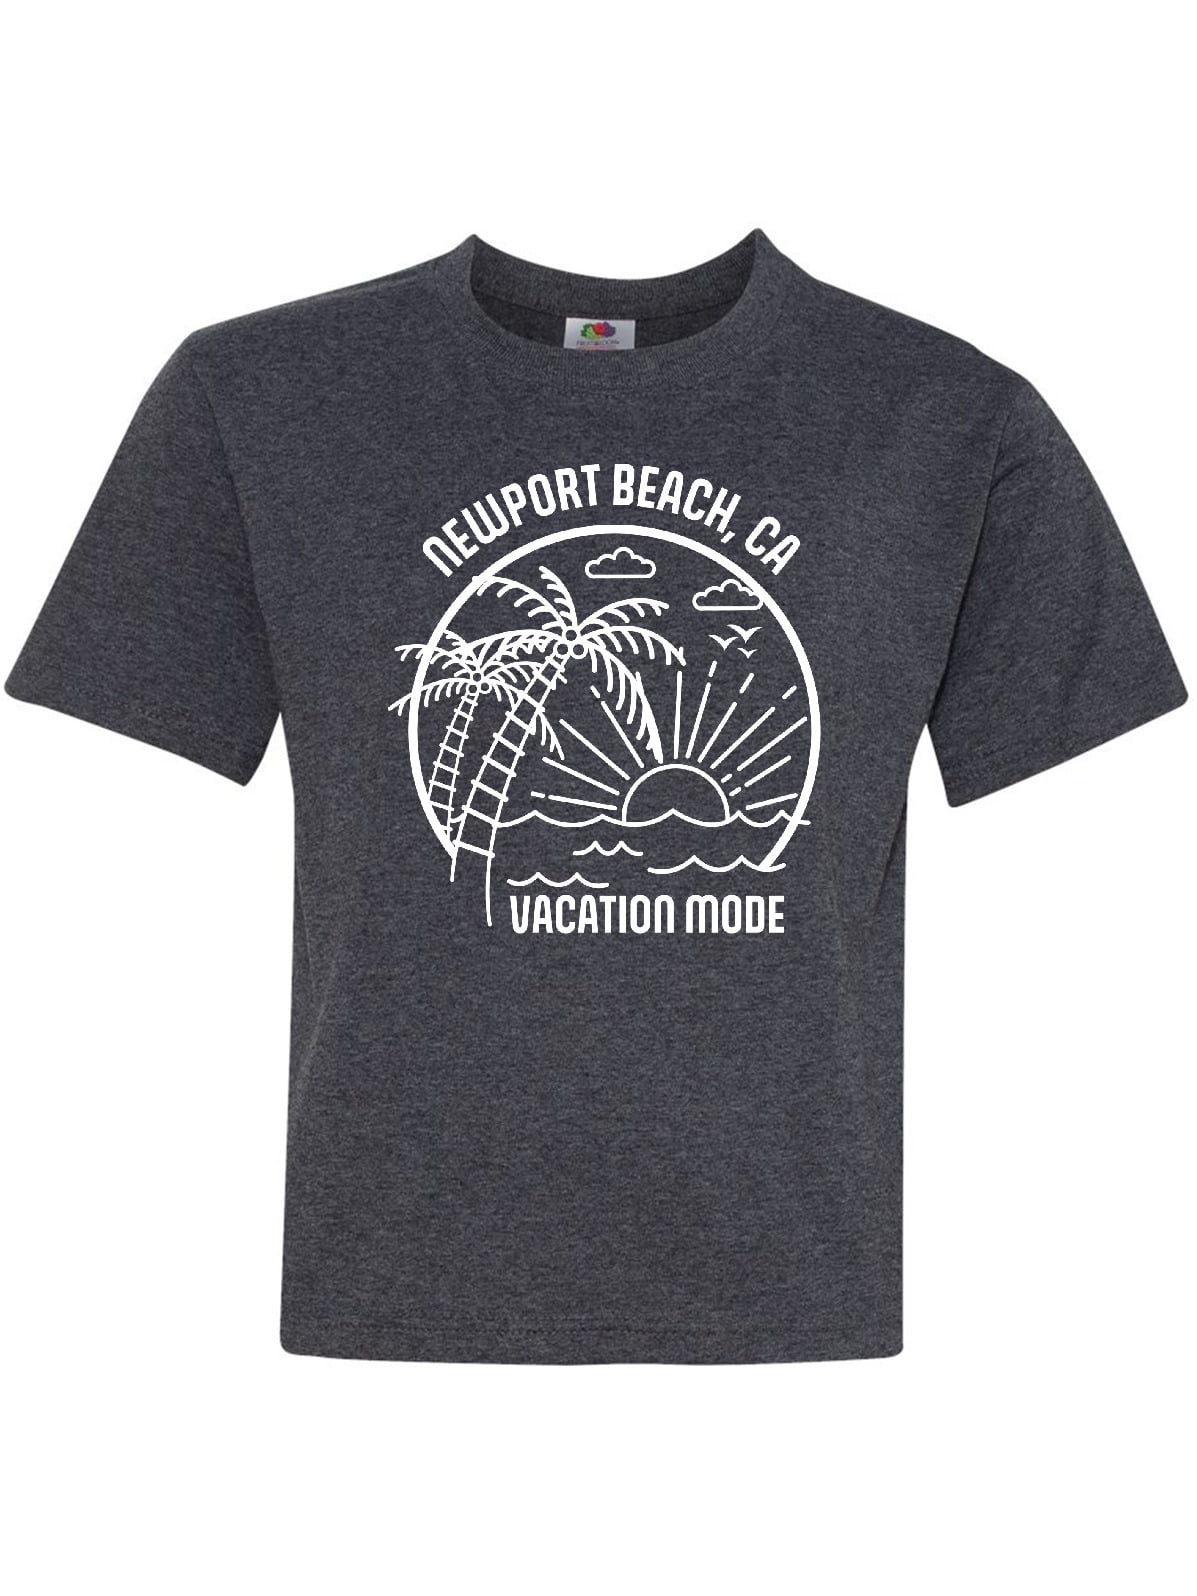 Summer Vacation Mode Newport Beach California Youth T-Shirt - Walmart ...